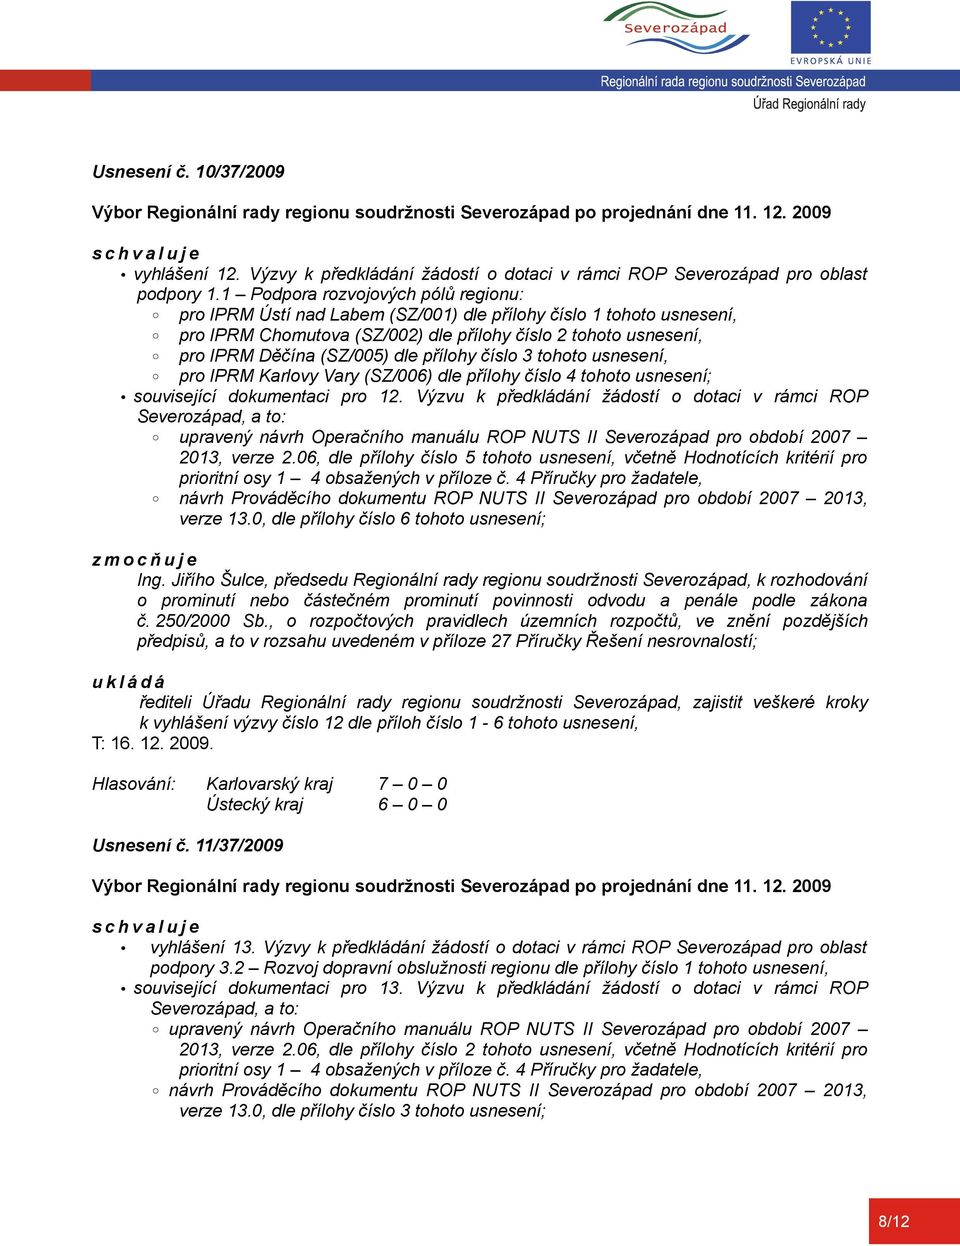 přílohy číslo 3 tohoto usnesení, pro IPRM Karlovy Vary (SZ/006) dle přílohy číslo 4 tohoto usnesení; související dokumentaci pro 12.